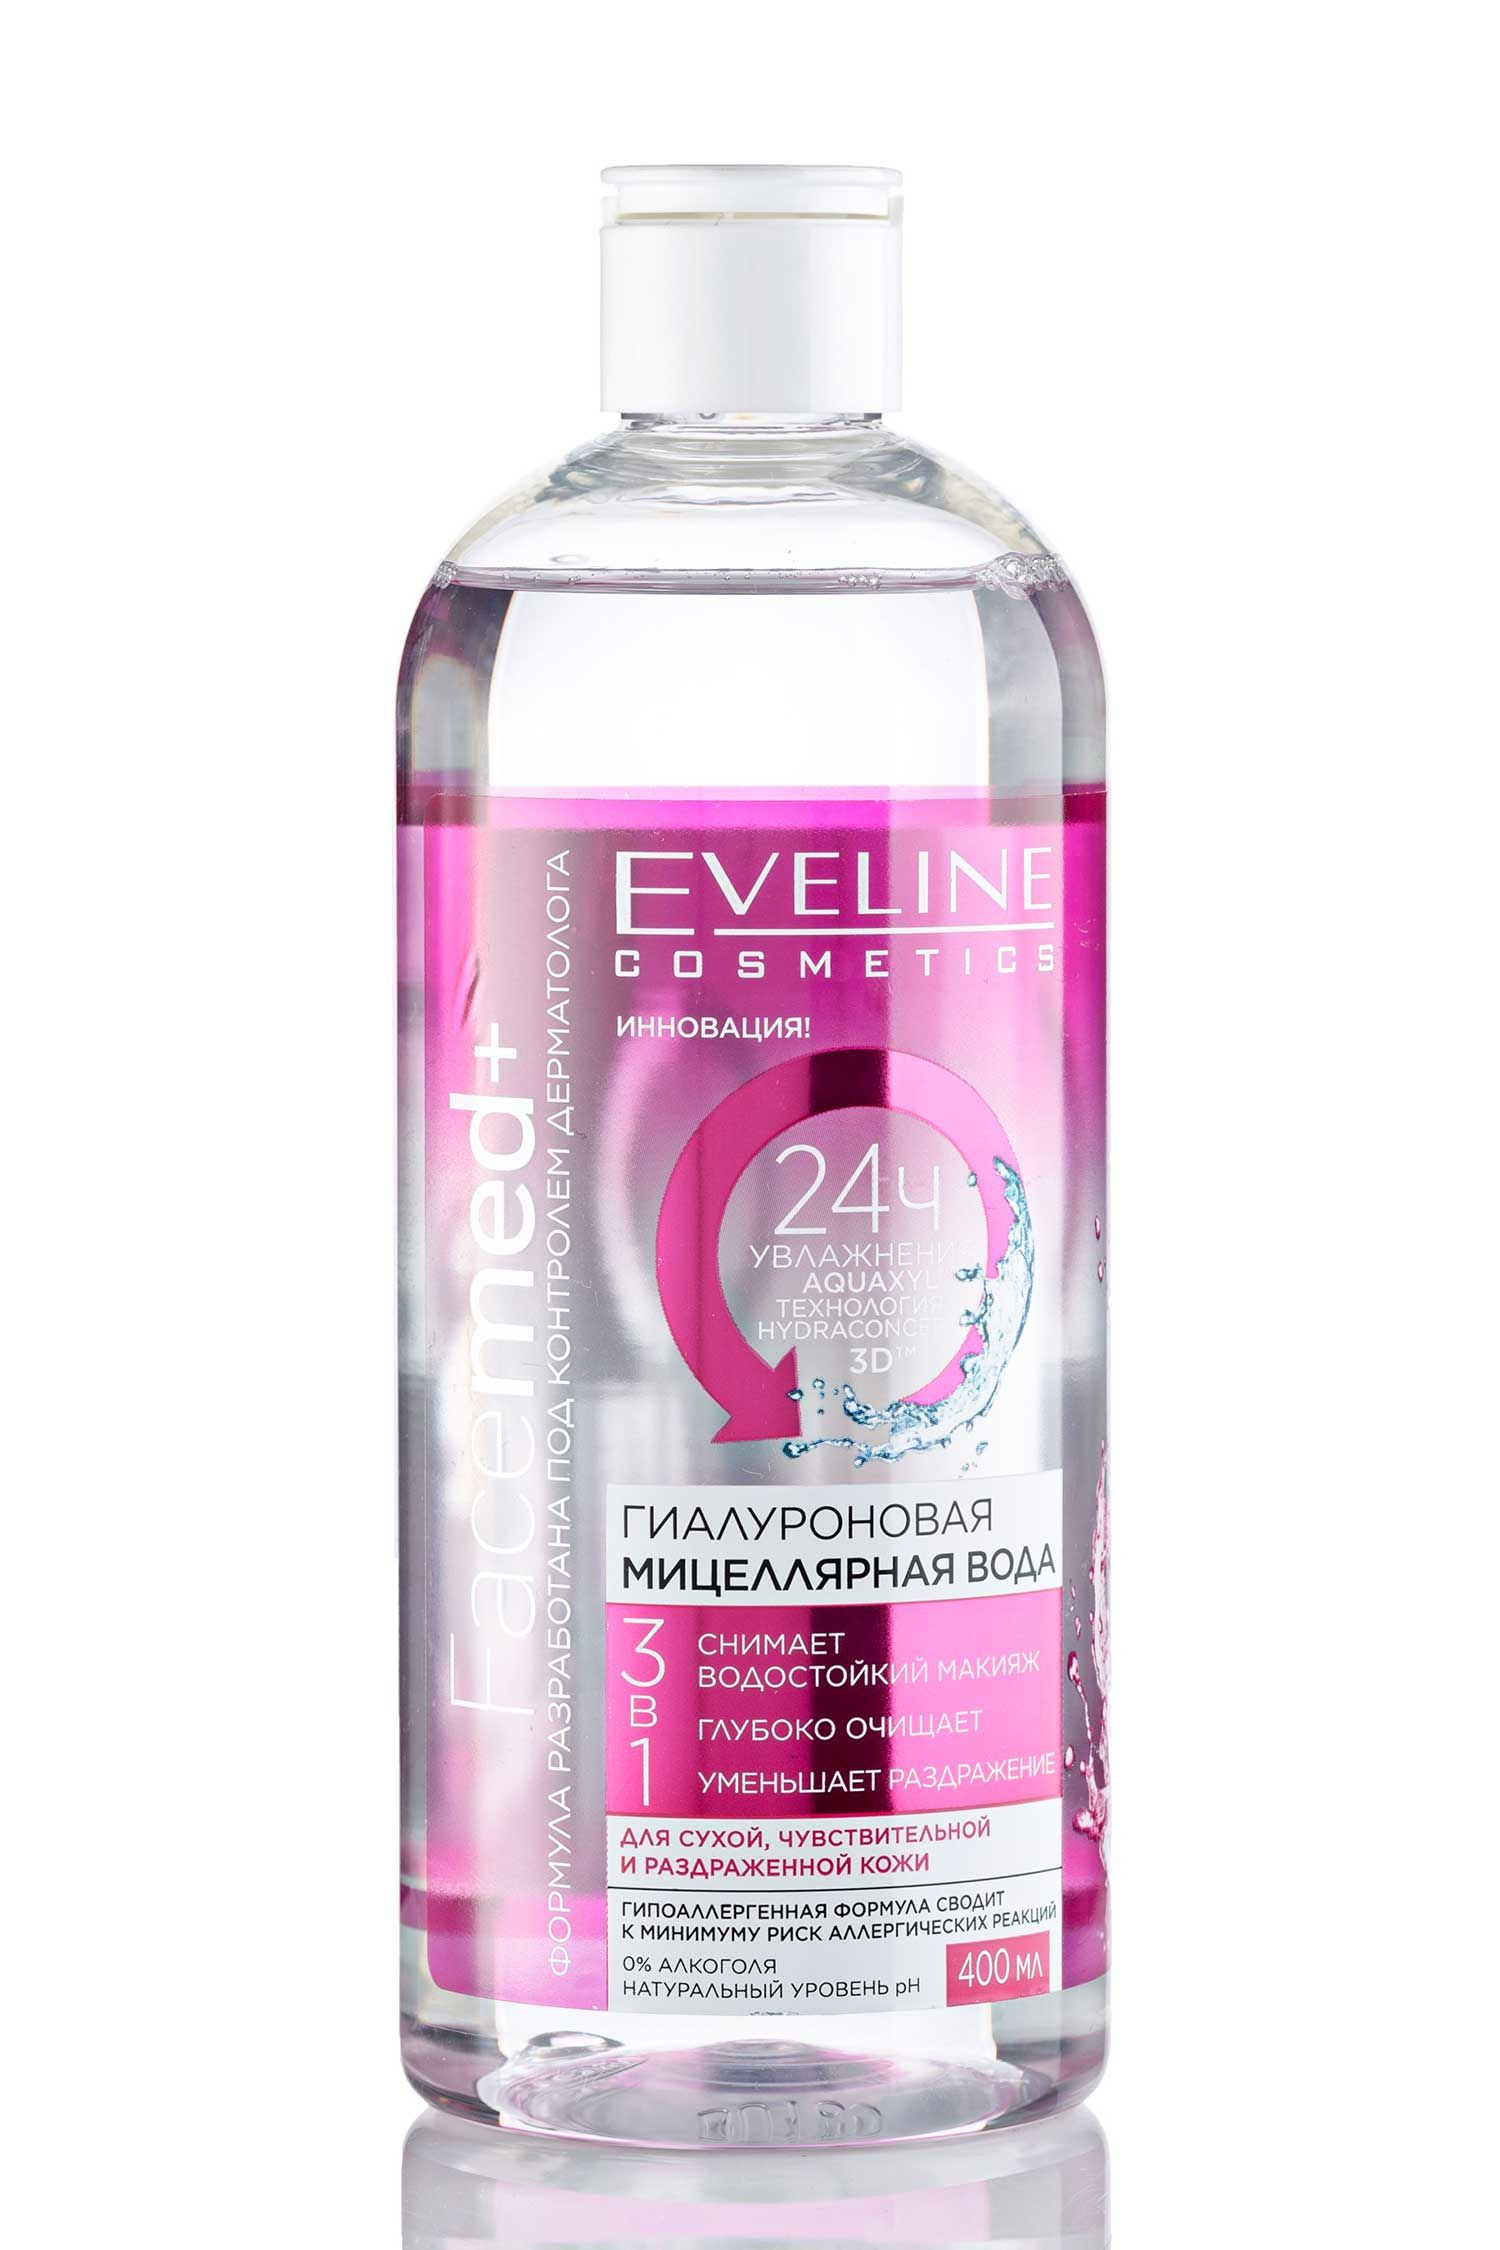 Eveline Facemed+мицеллярная вода розовая 3в1 400мл. Eveline мицеллярная вода 3 в 1. Eveline Facemed + мицеллярная вода очищающая 3 в1 400 мл. Гиалуроновая мицеллярная вода 3в1 400мл Eveline Facemed+.